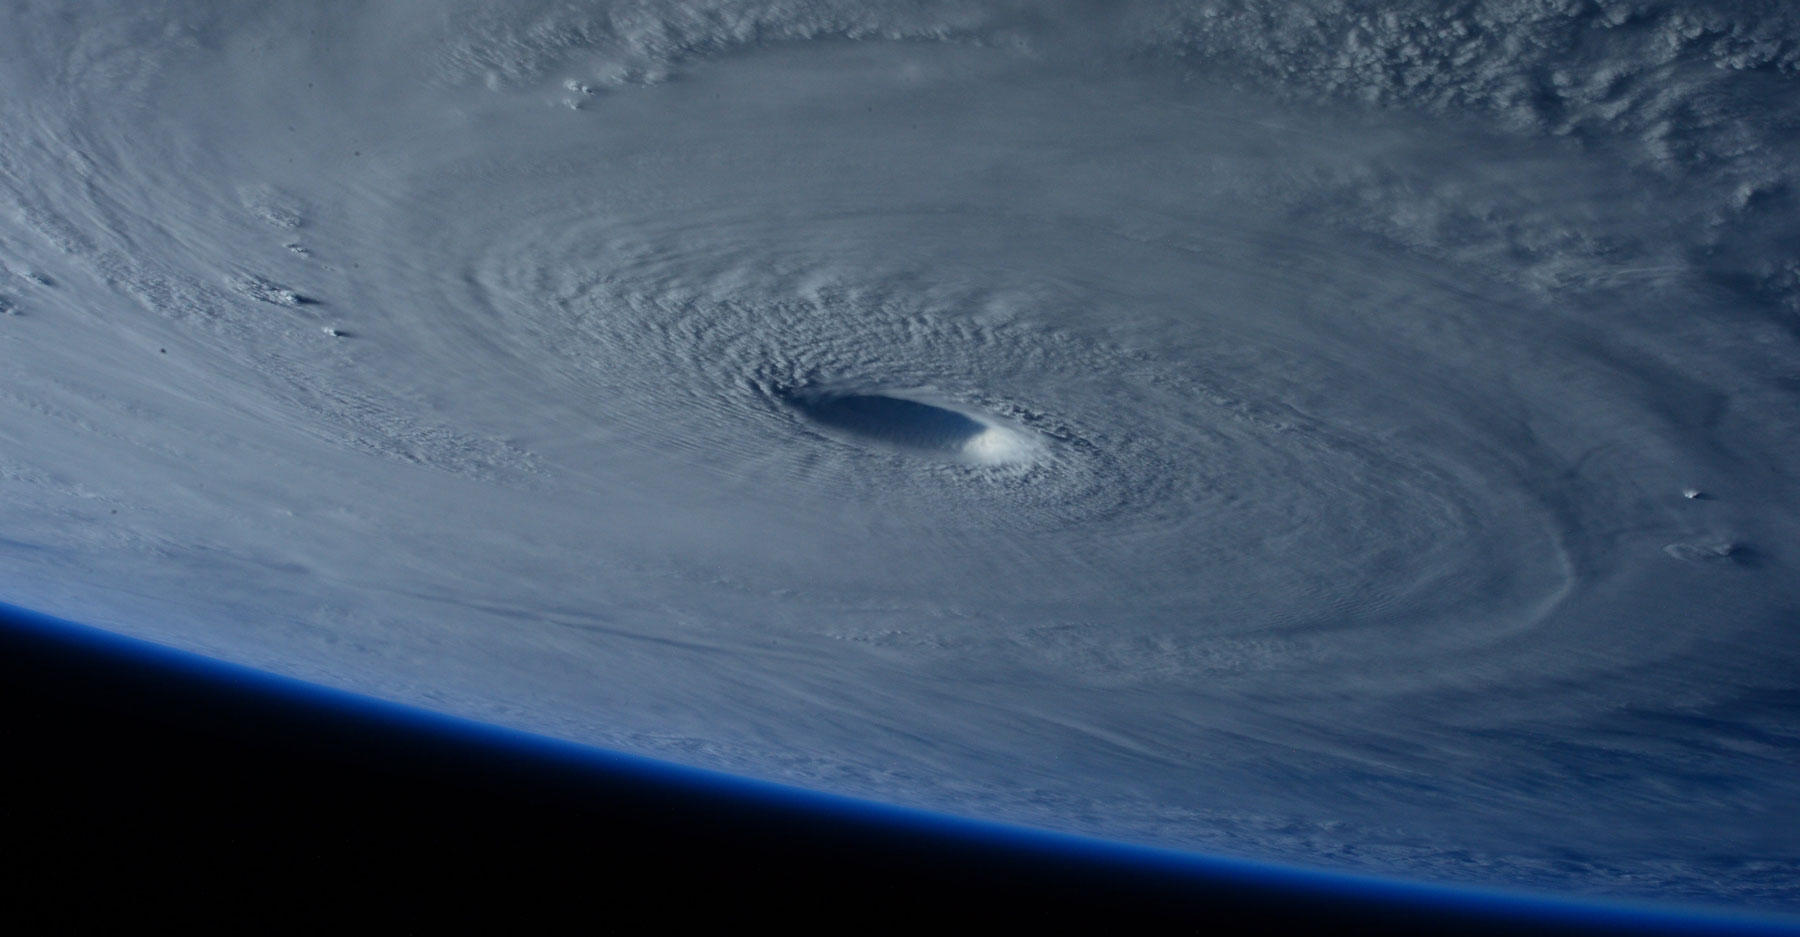 Hình ảnh siêu bão hiện lên rõ ràng từ ảnh chụp vệ tinh